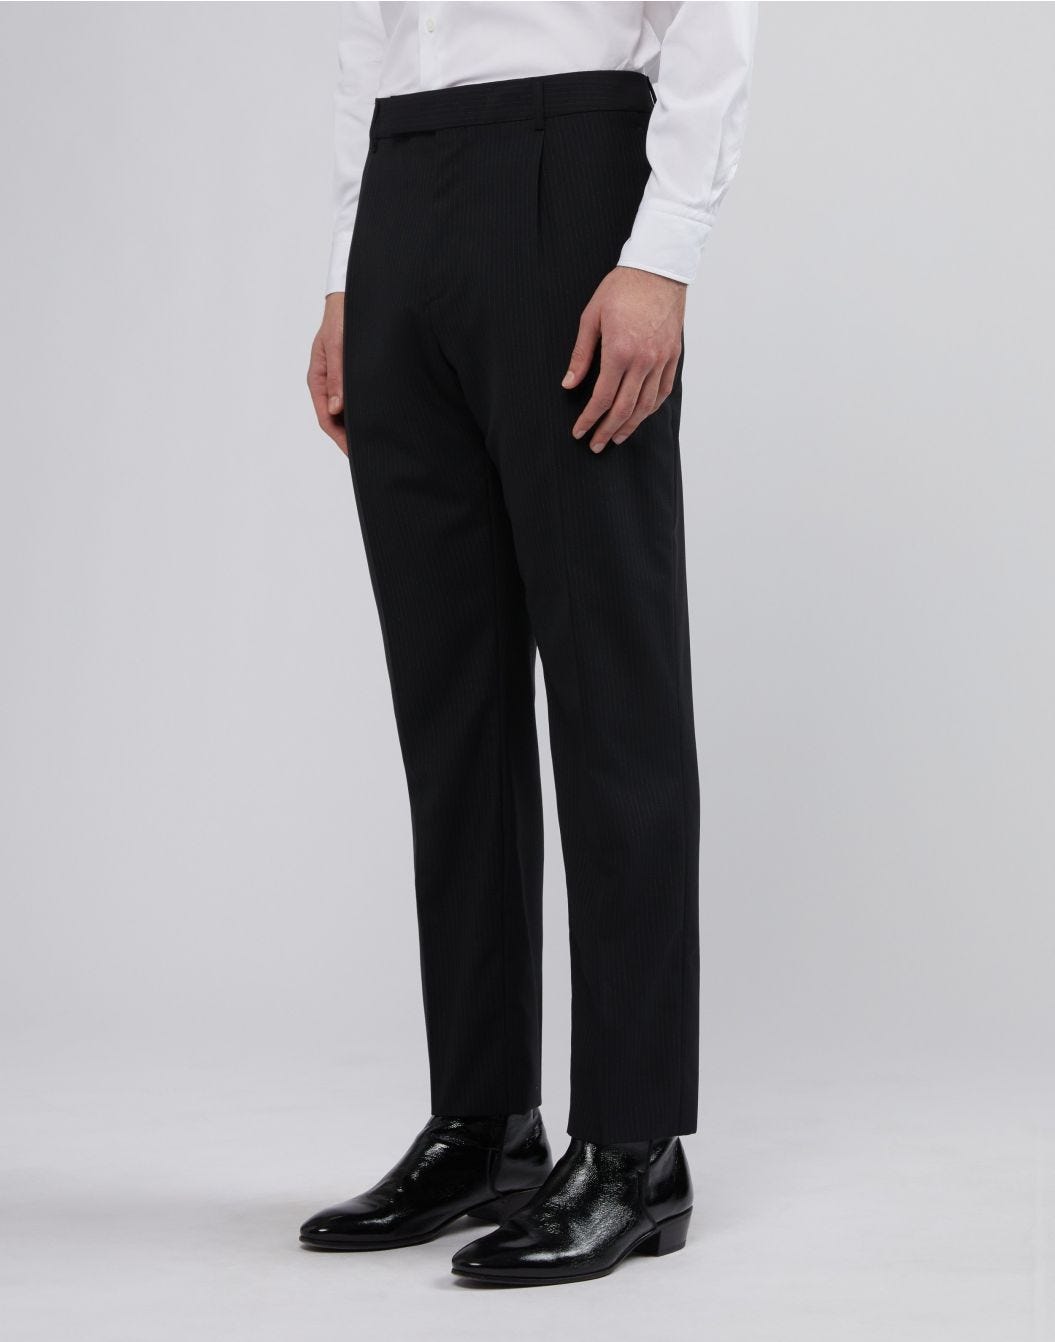 Pantalon noir à fines rayures contrastantes